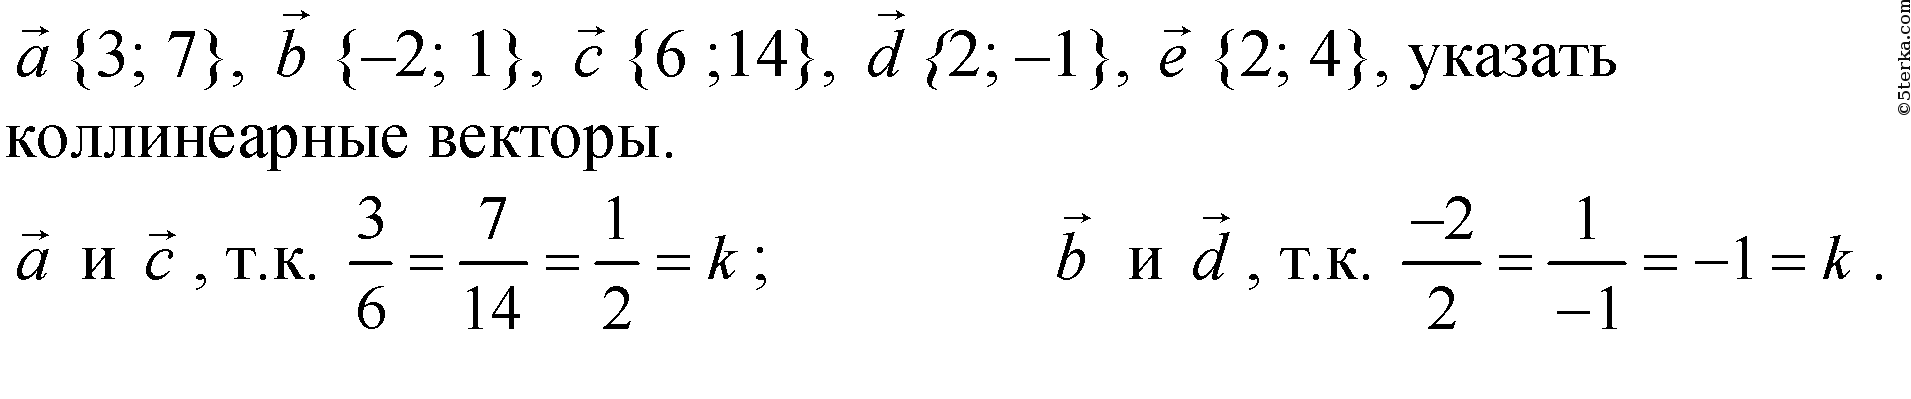 Вектор 3 2n. Укажите пару коллинеарных векторов. 1+1=2 Вектор. 1 2 3 Вектор. Вектор 1 4 3.